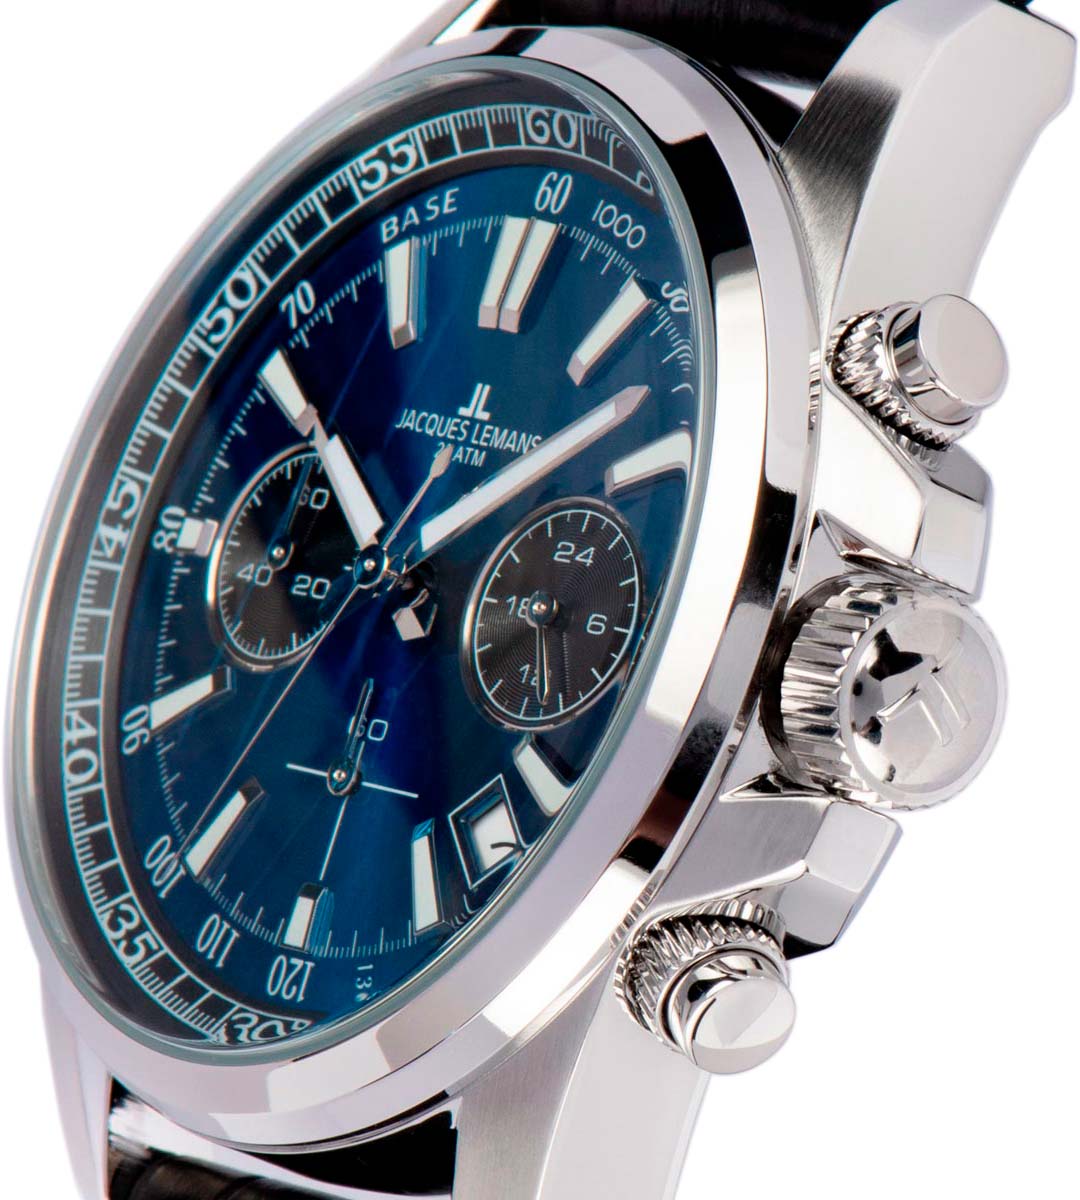 Наручные часы Jacques Lemans описание цене, 1-2117S инструкция, AllTime.ru фото, лучшей в интернет-магазине купить характеристики, — по